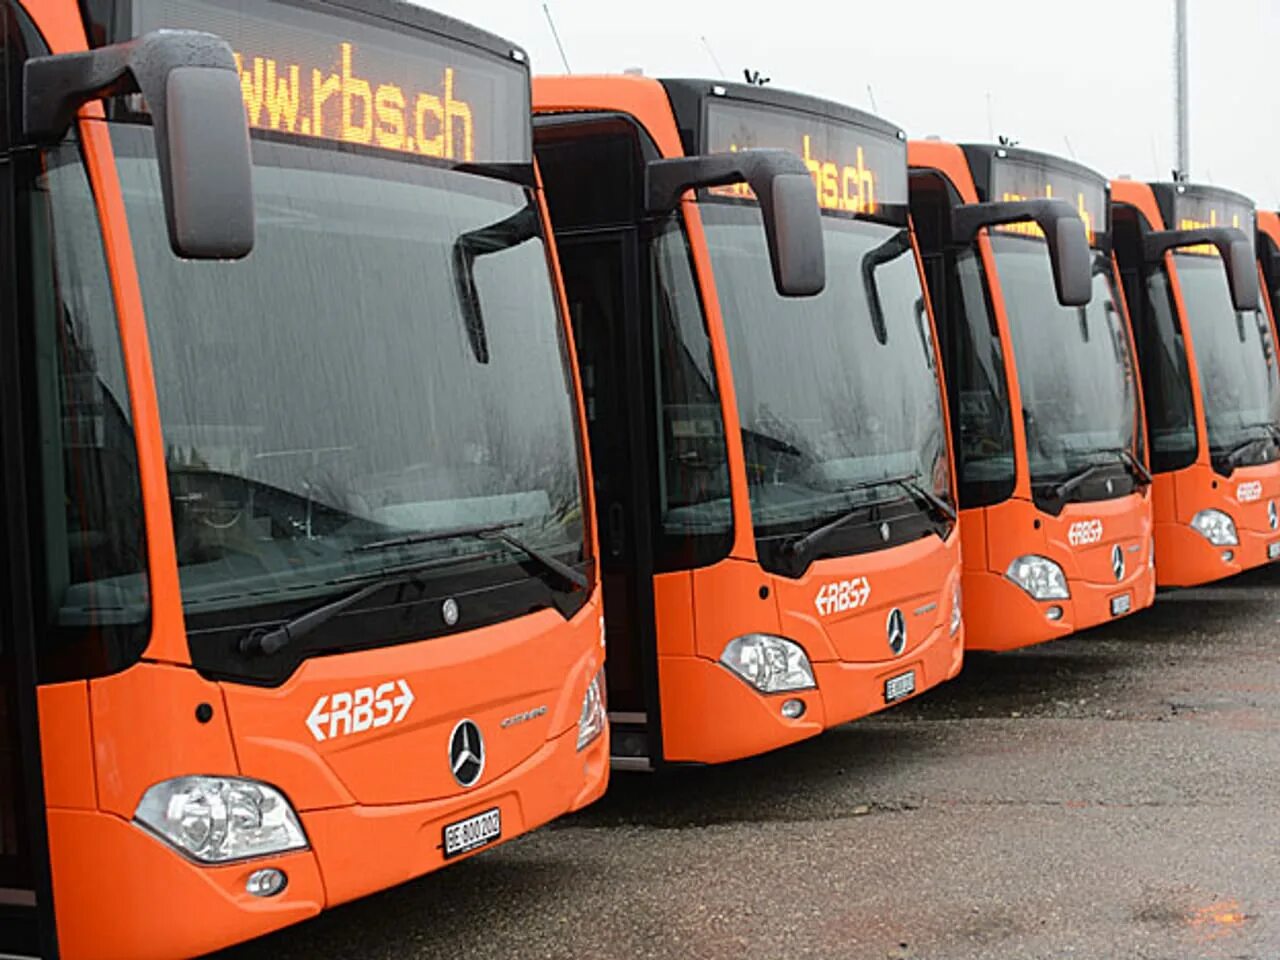 Оранжевый автобус. Тур оранжевый автобус. Оранжевые автобусы в России. Автобус апельсин.